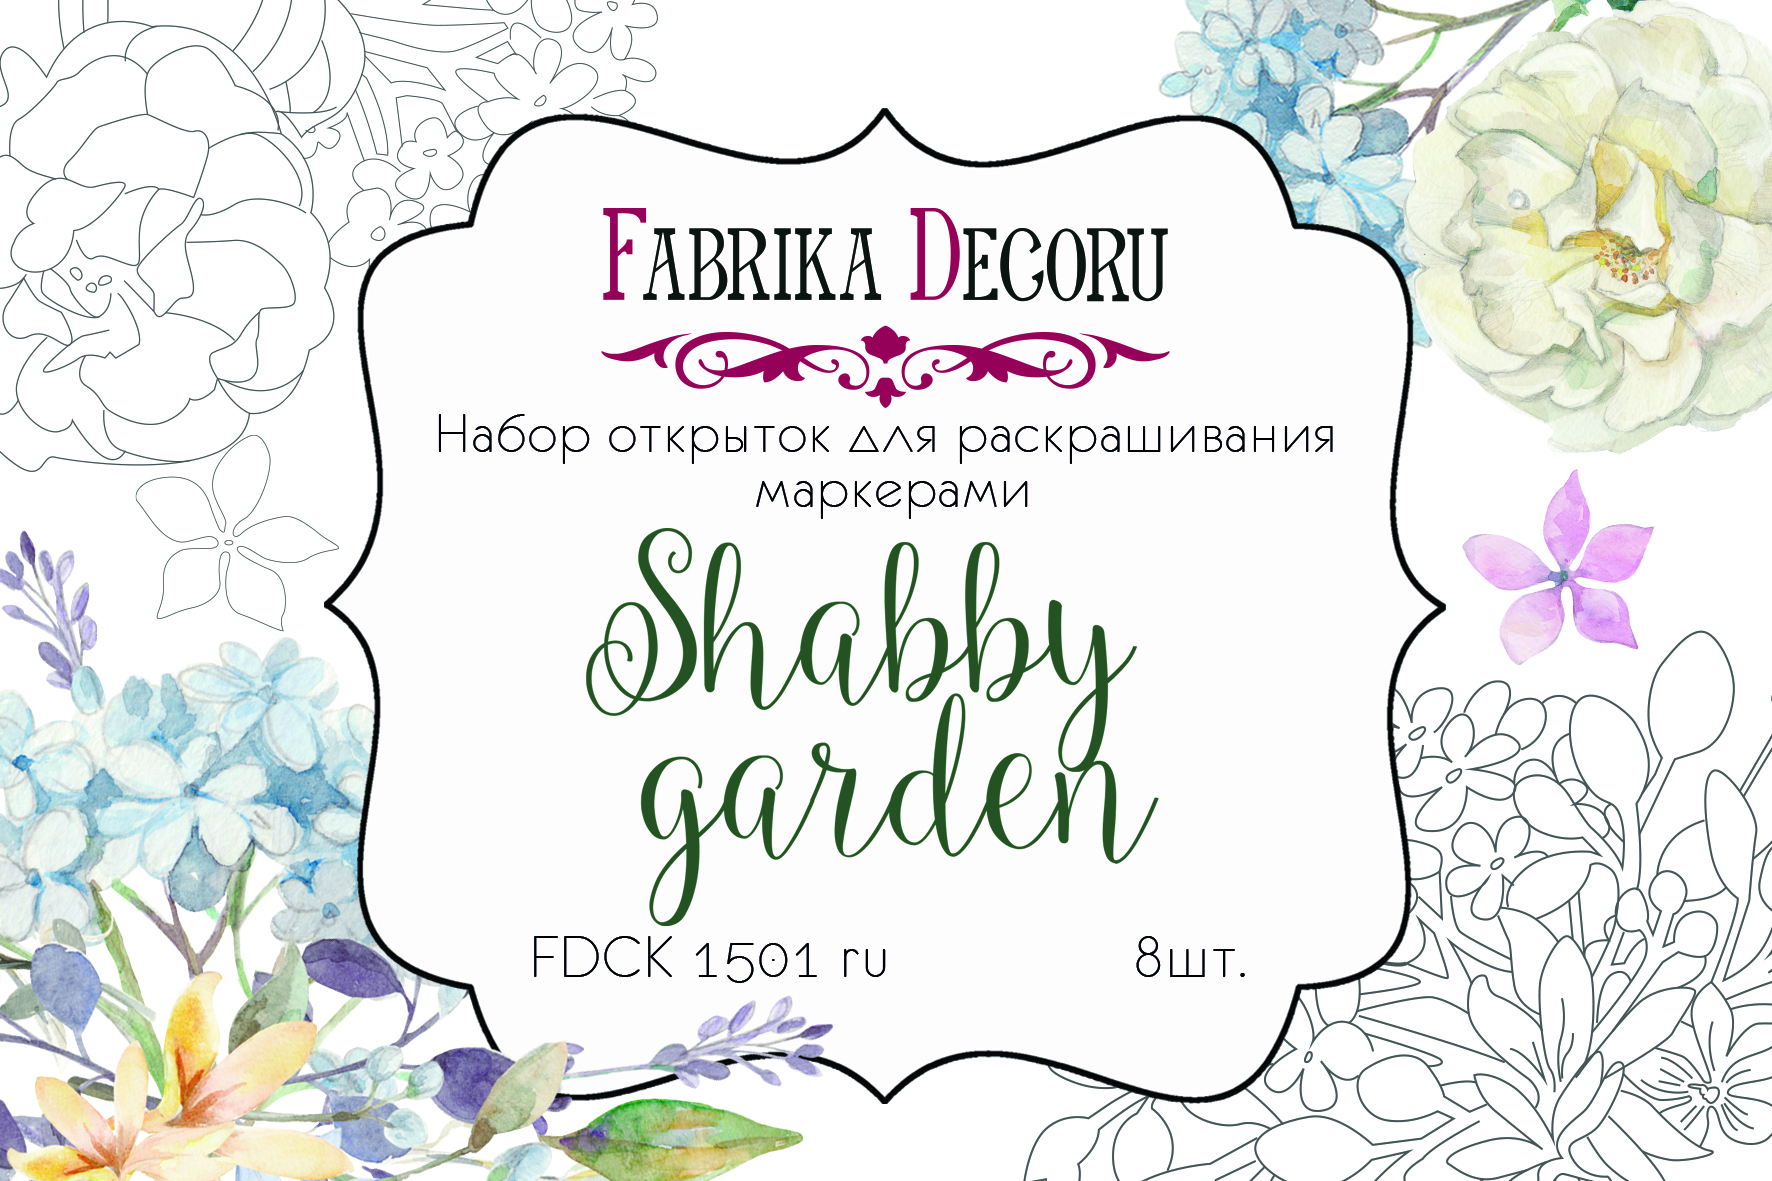 Zestaw pocztówek "Shabby garden" do kolorowania markerami RU - Fabrika Decoru